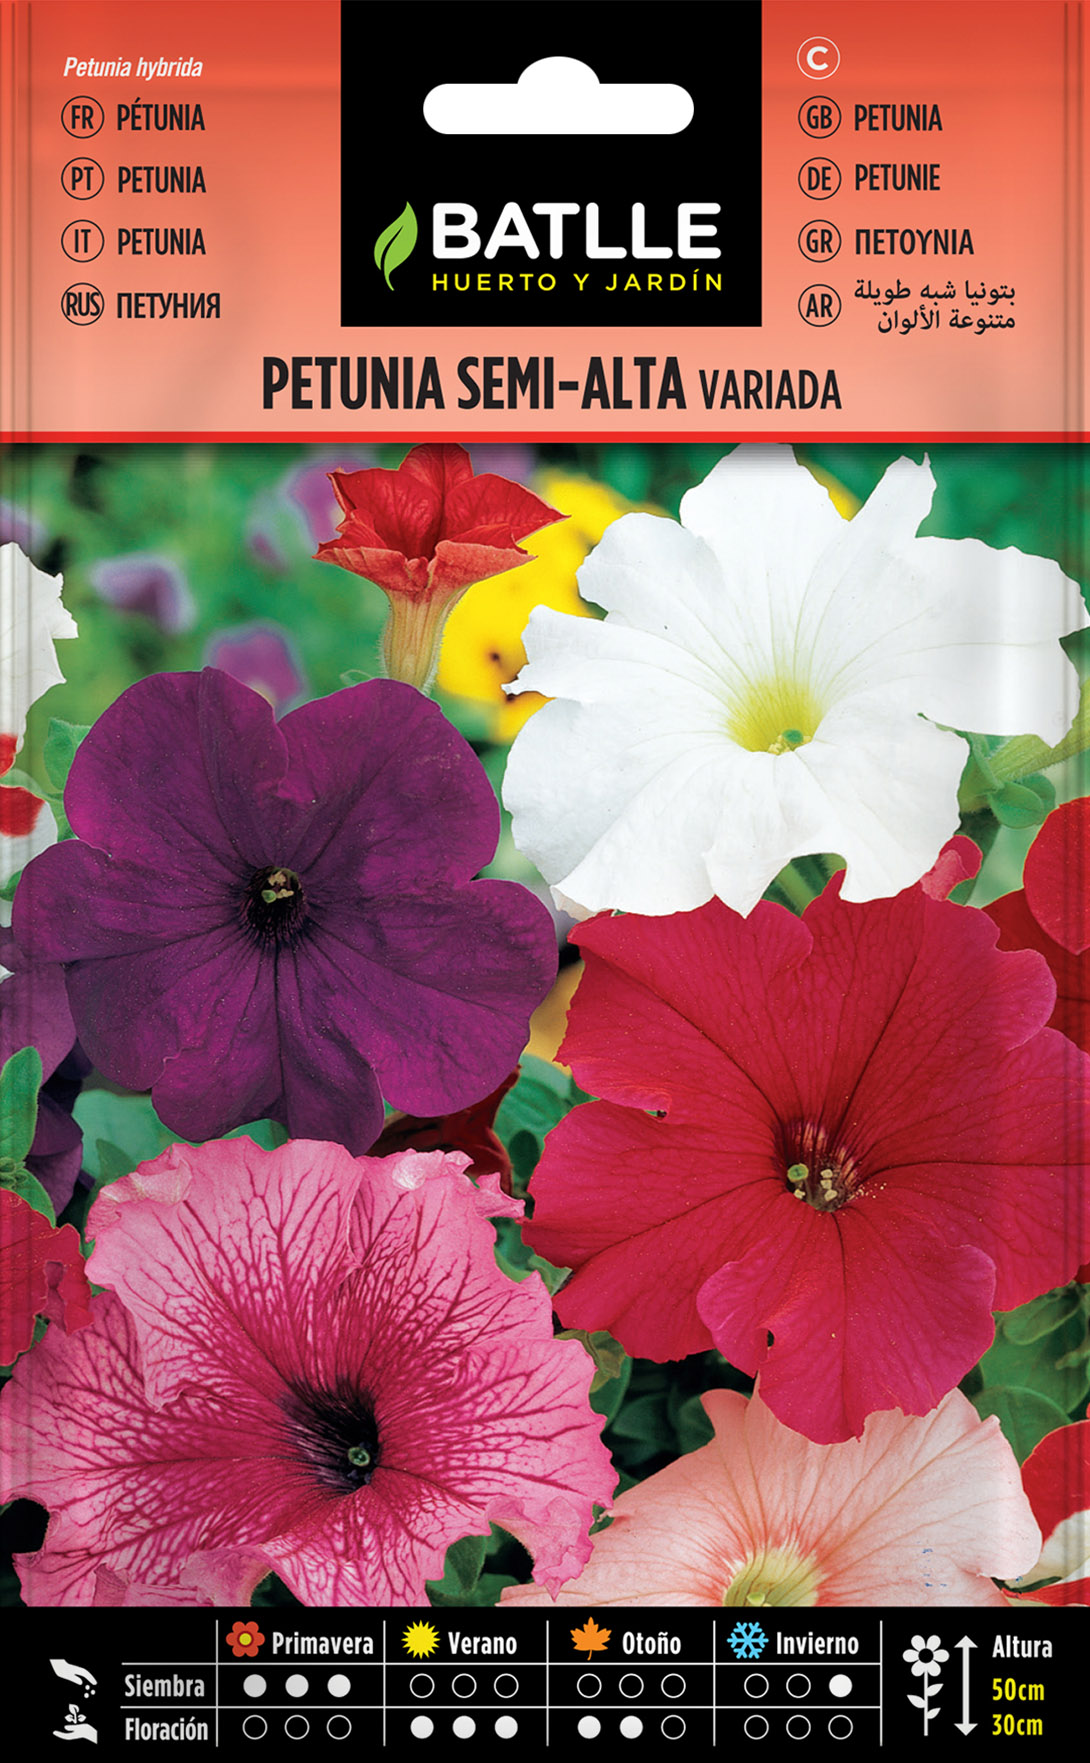 Petunia Semi-Alta Variada - Semillas Batlle - Huerto y Jardín